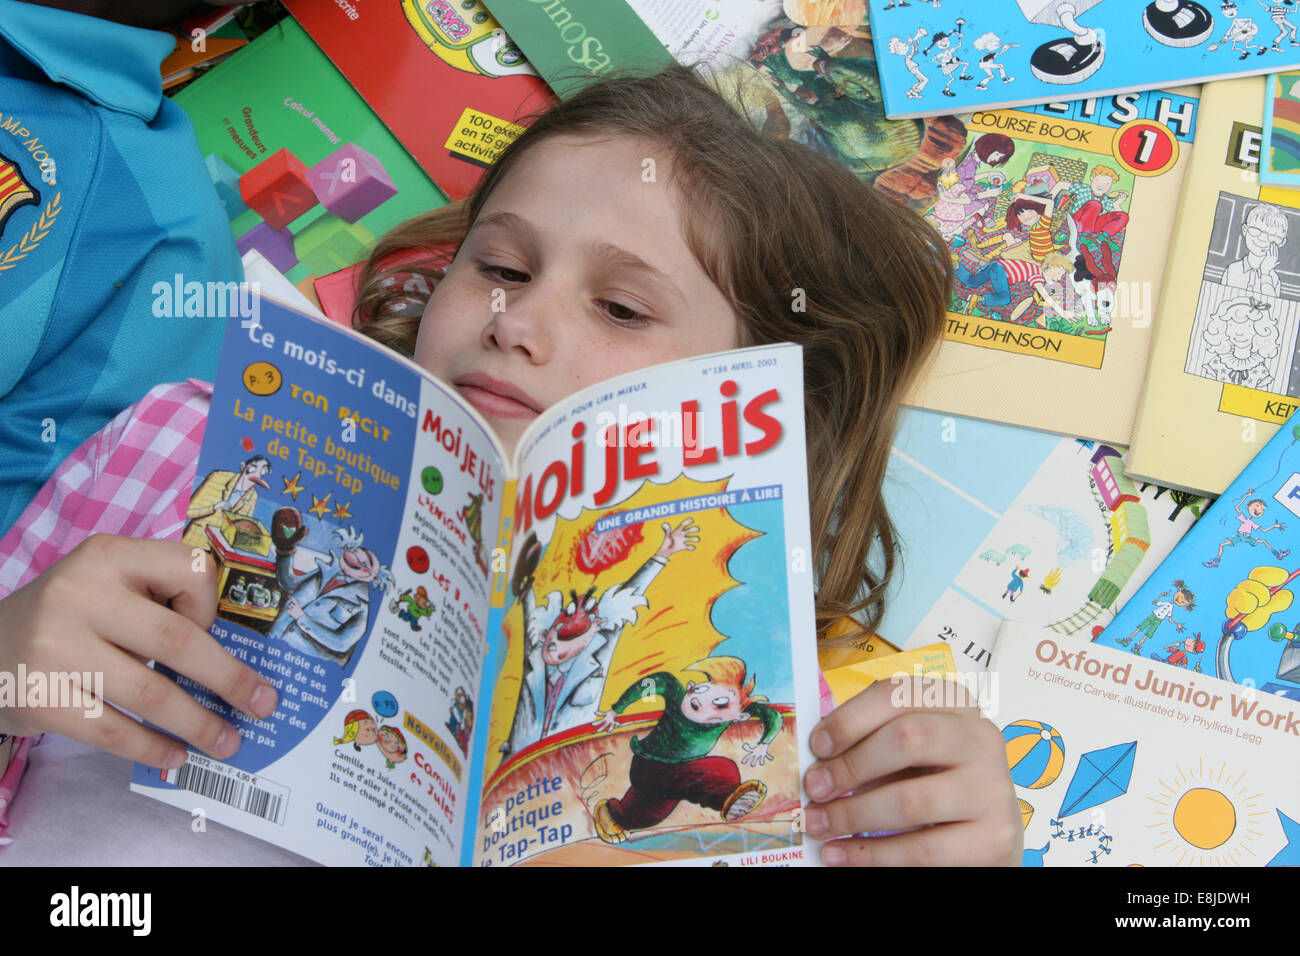 Girl reading a book. Stock Photo